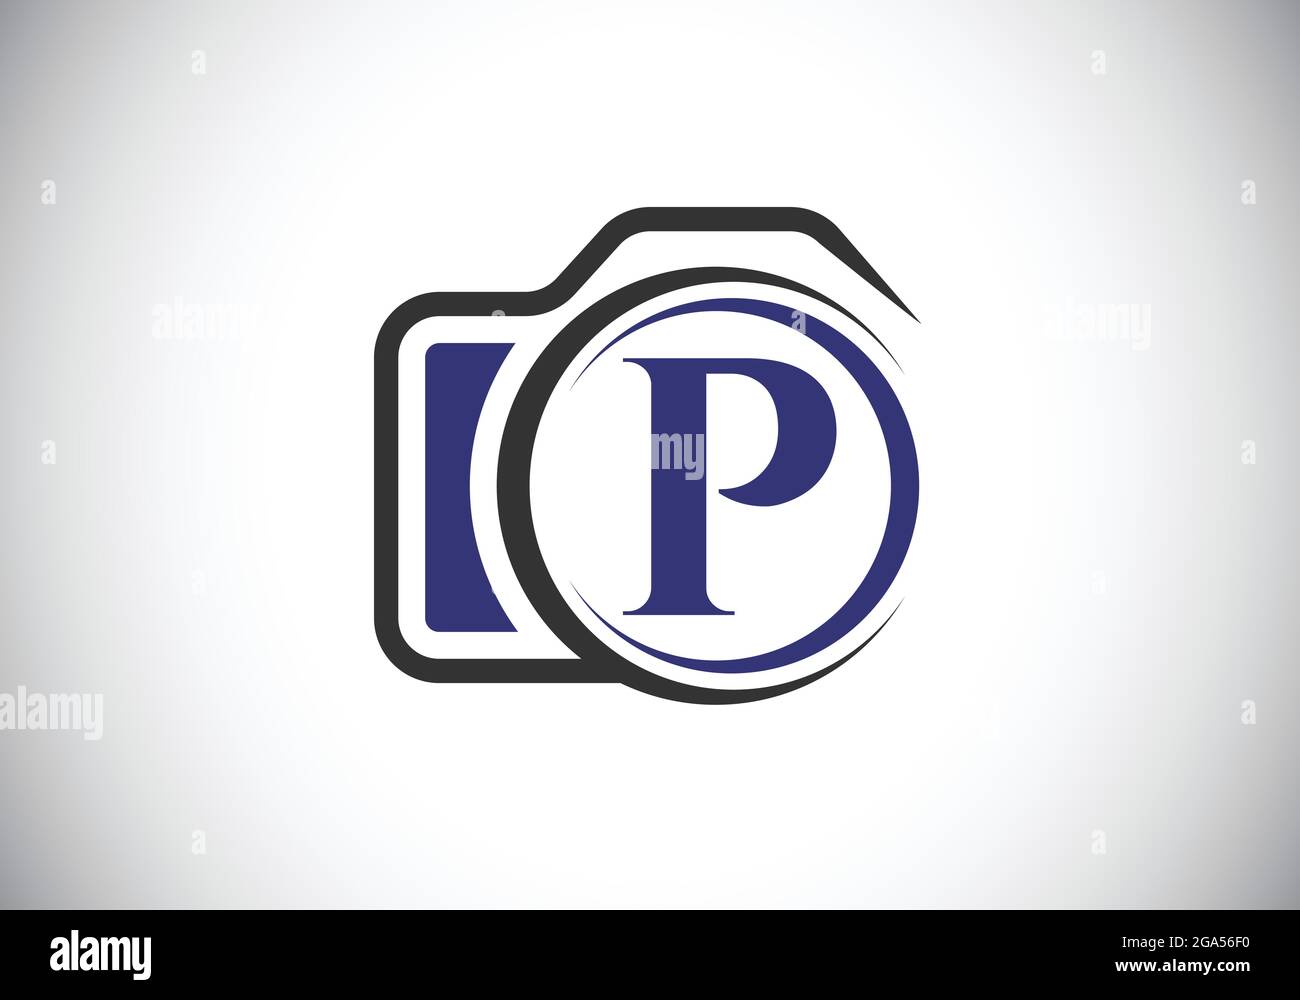 Lettre initiale du P monogramme avec une icône représentant une caméra. Illustration vectorielle du logo de photographie. Design moderne du logo pour les entreprises et les entreprises de photographie Illustration de Vecteur